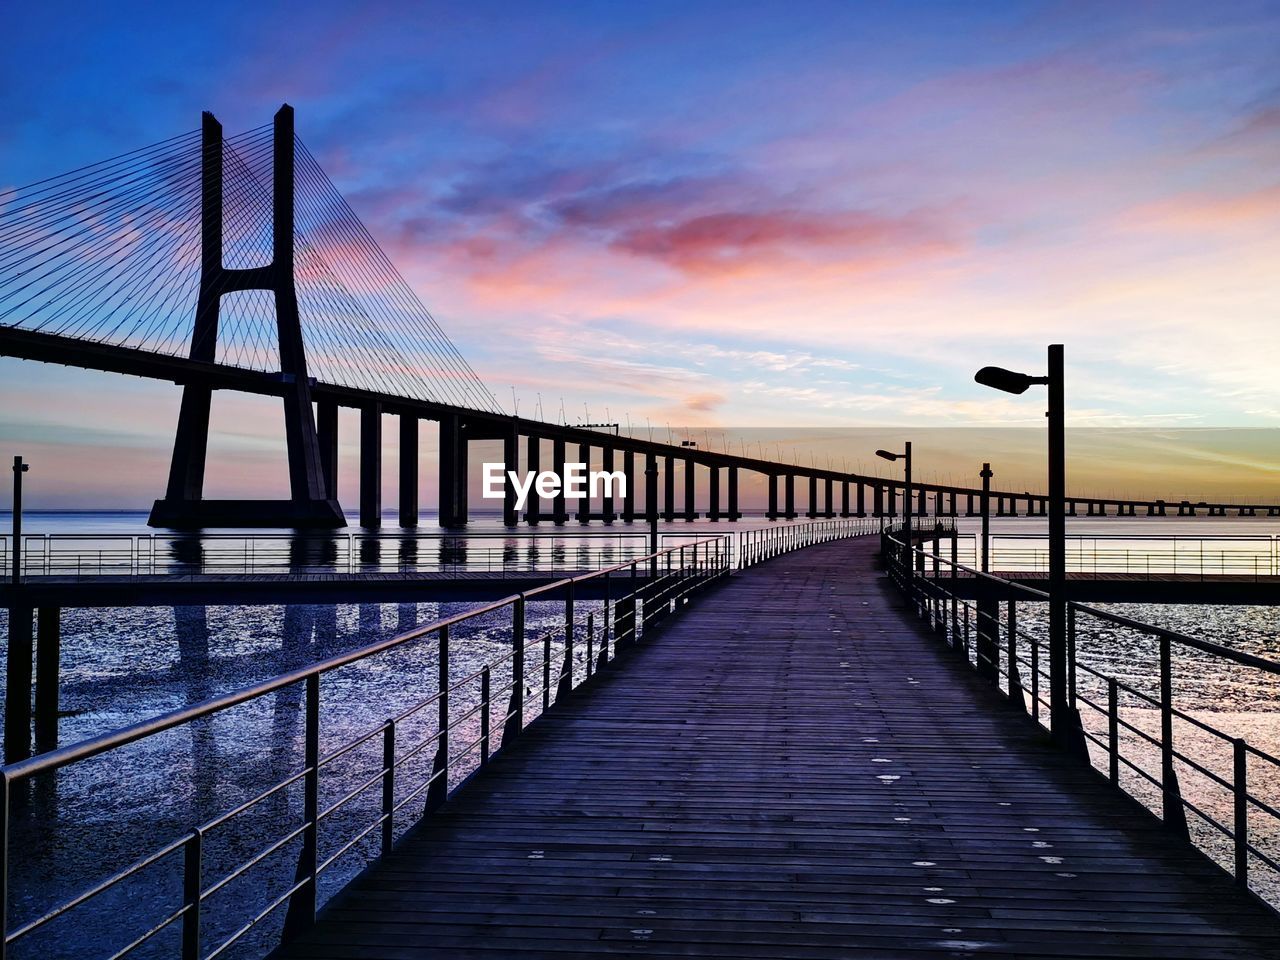 Pier over sea against sky during sunrise and vasco da gama bridge at tejo river